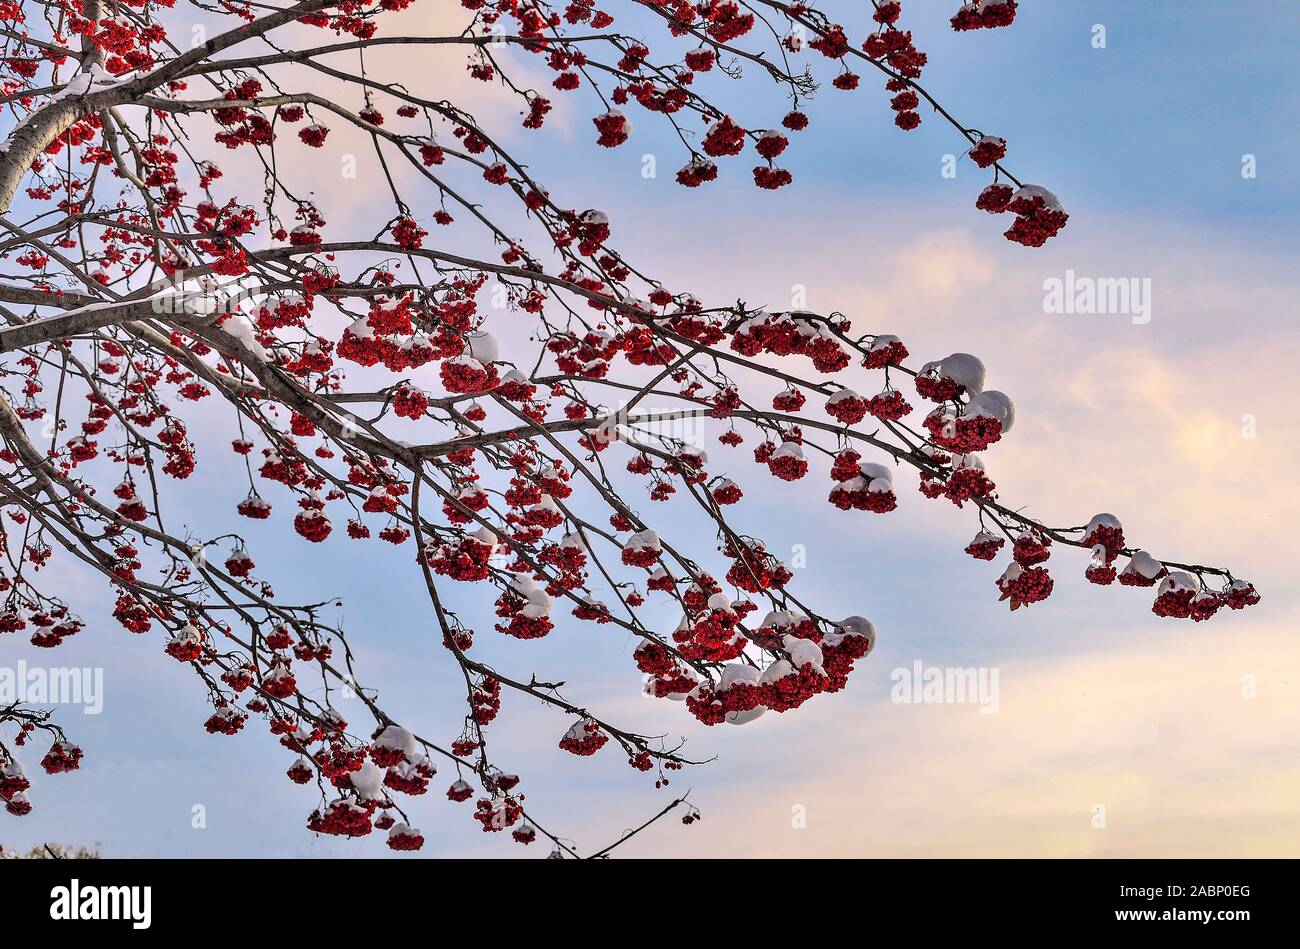 Schnee bedeckt Rowan Tree Branches mit roten Beeren - Winterlandschaft auf Sonnenuntergang bzw. Sonnenaufgang Himmel Hintergrund. Helle Einrichtung in weiß winter natur und Stockfoto